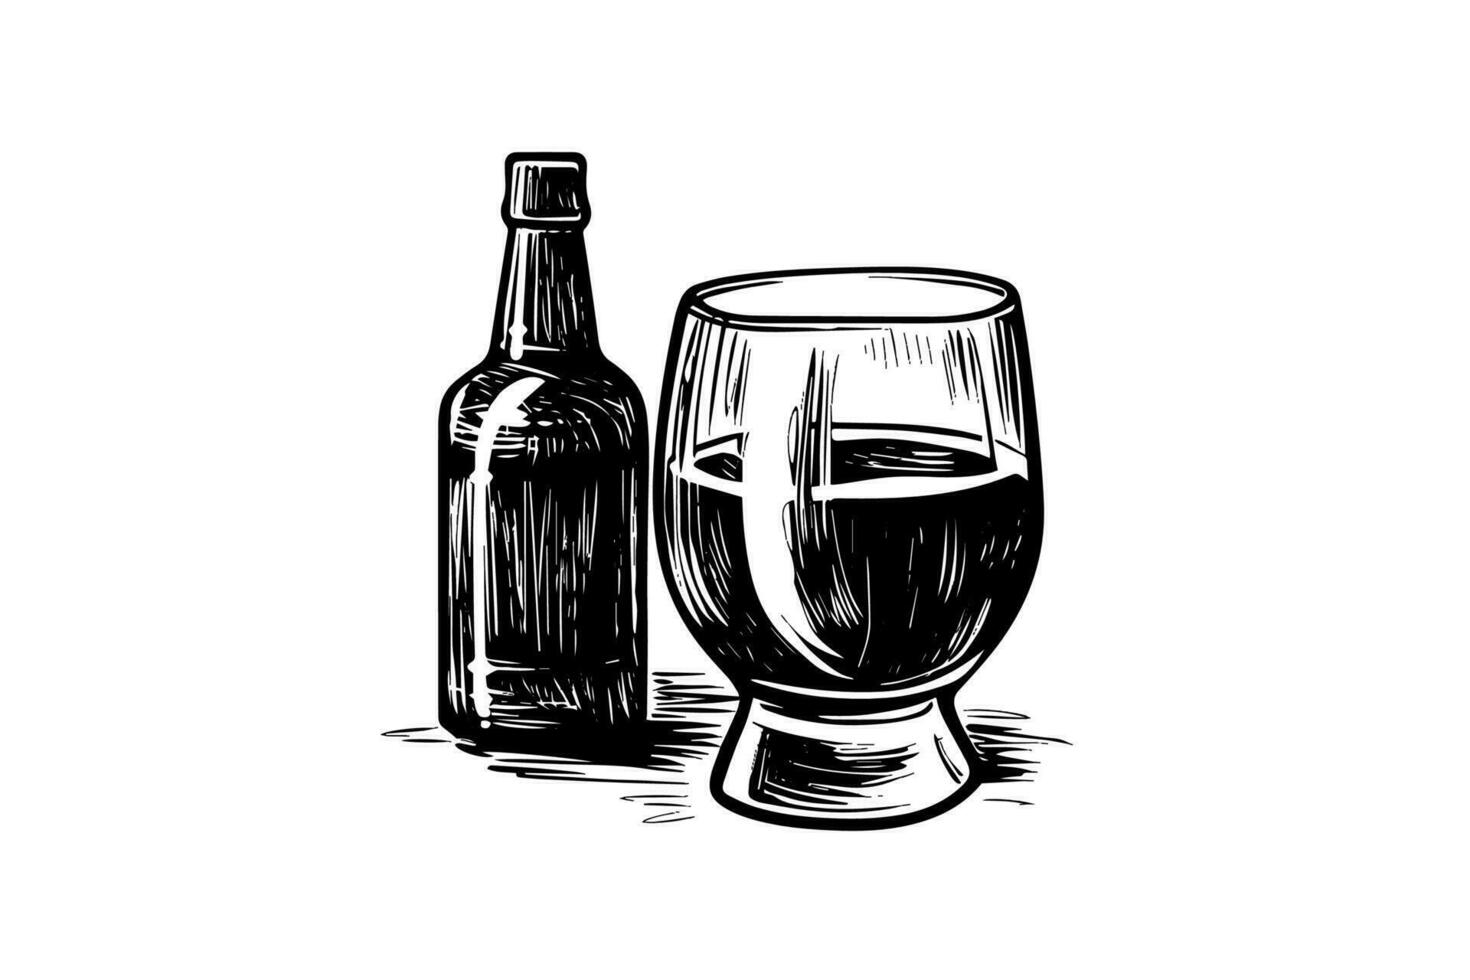 Glas von Bier mit Flasche von Bier isoliert auf Weiß Hintergrund, Handzeichnung skizzieren. Vektor Jahrgang graviert Illustration.